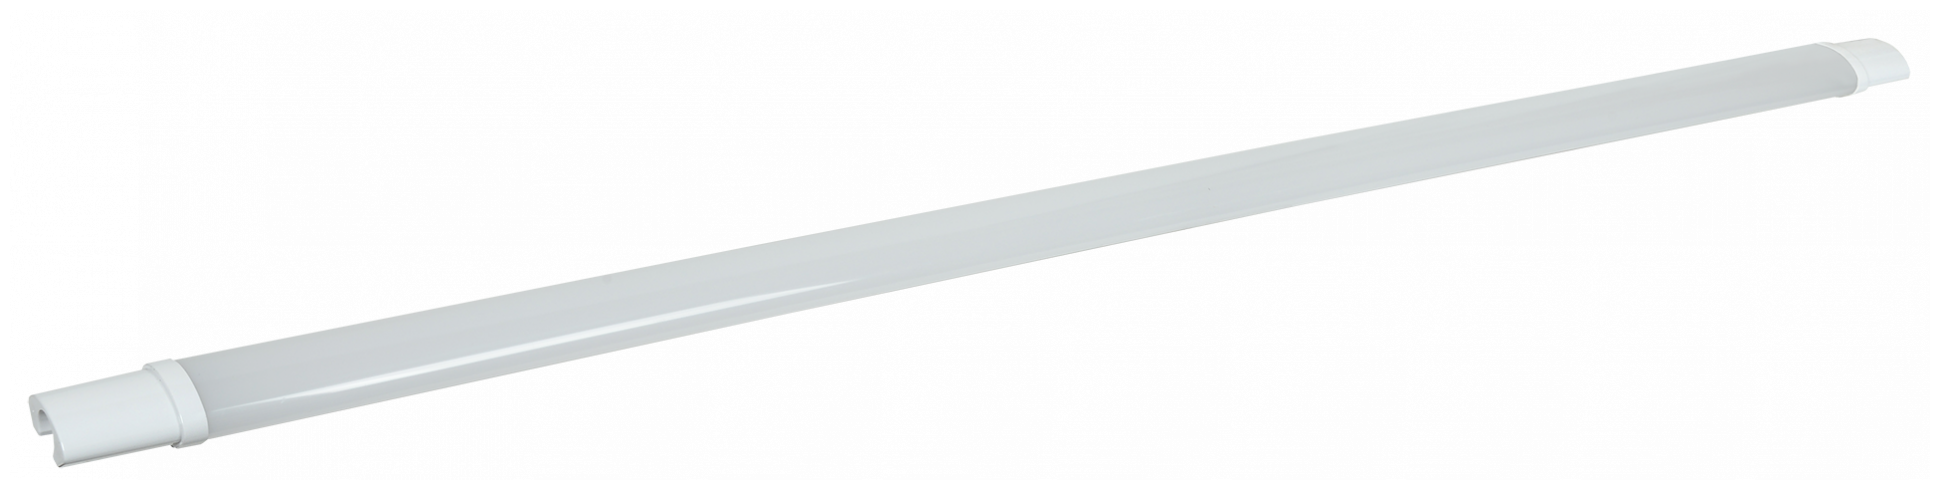 Светильник ДСП 1313 48Вт 6500К IP65 белый пластик, IEK LDSP0-1313-48-6500-K01 (1 шт.)